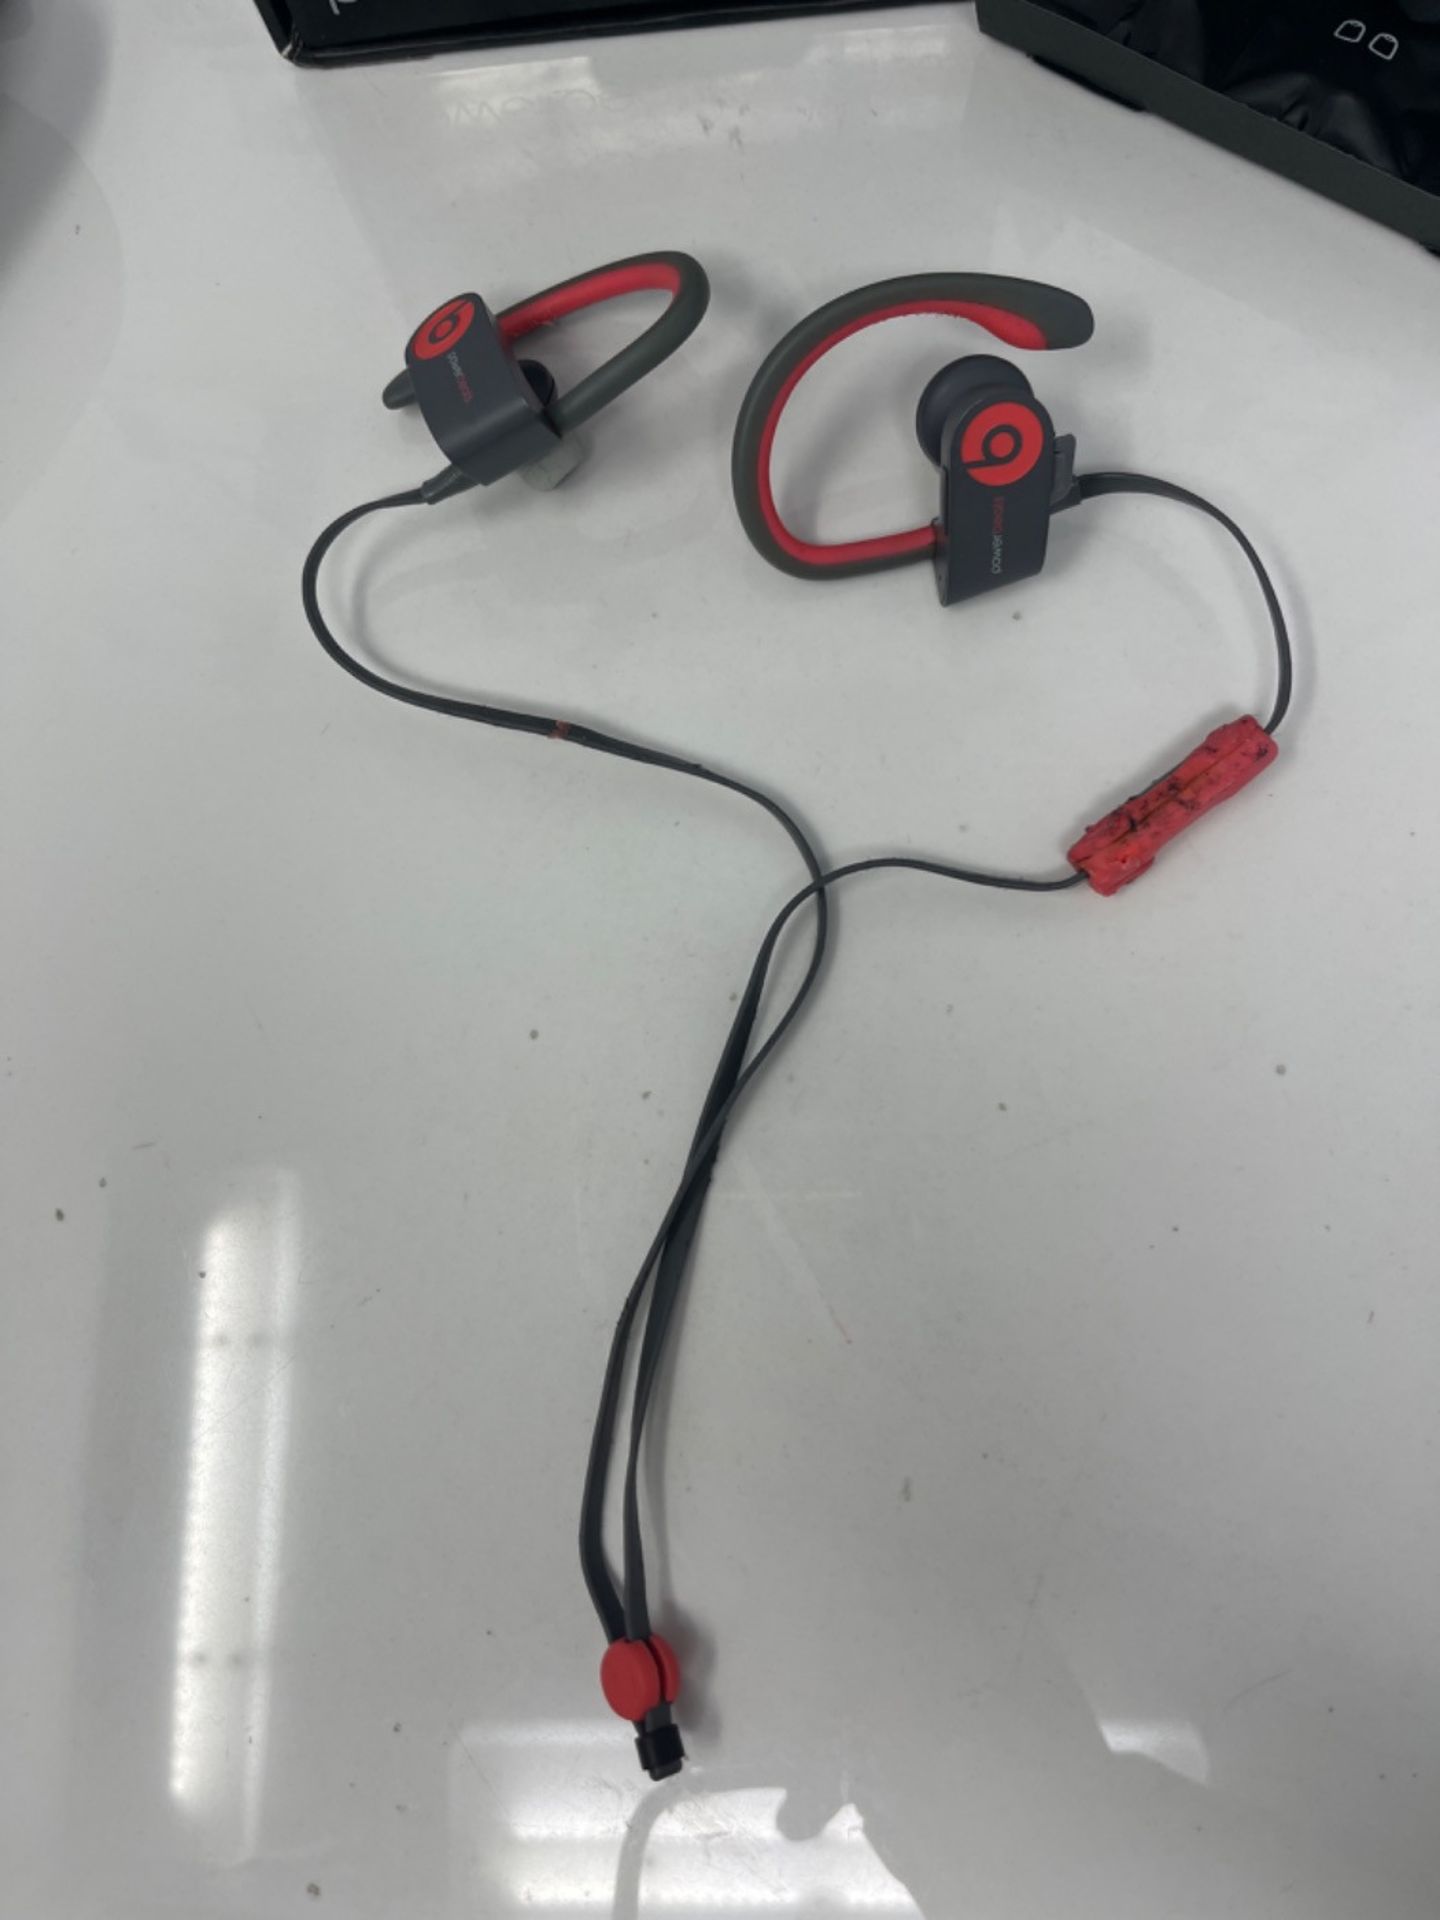 RRP £169.00 Powerbeats 2 Wireless In-Ear Headphone - Siren Red - Image 2 of 2